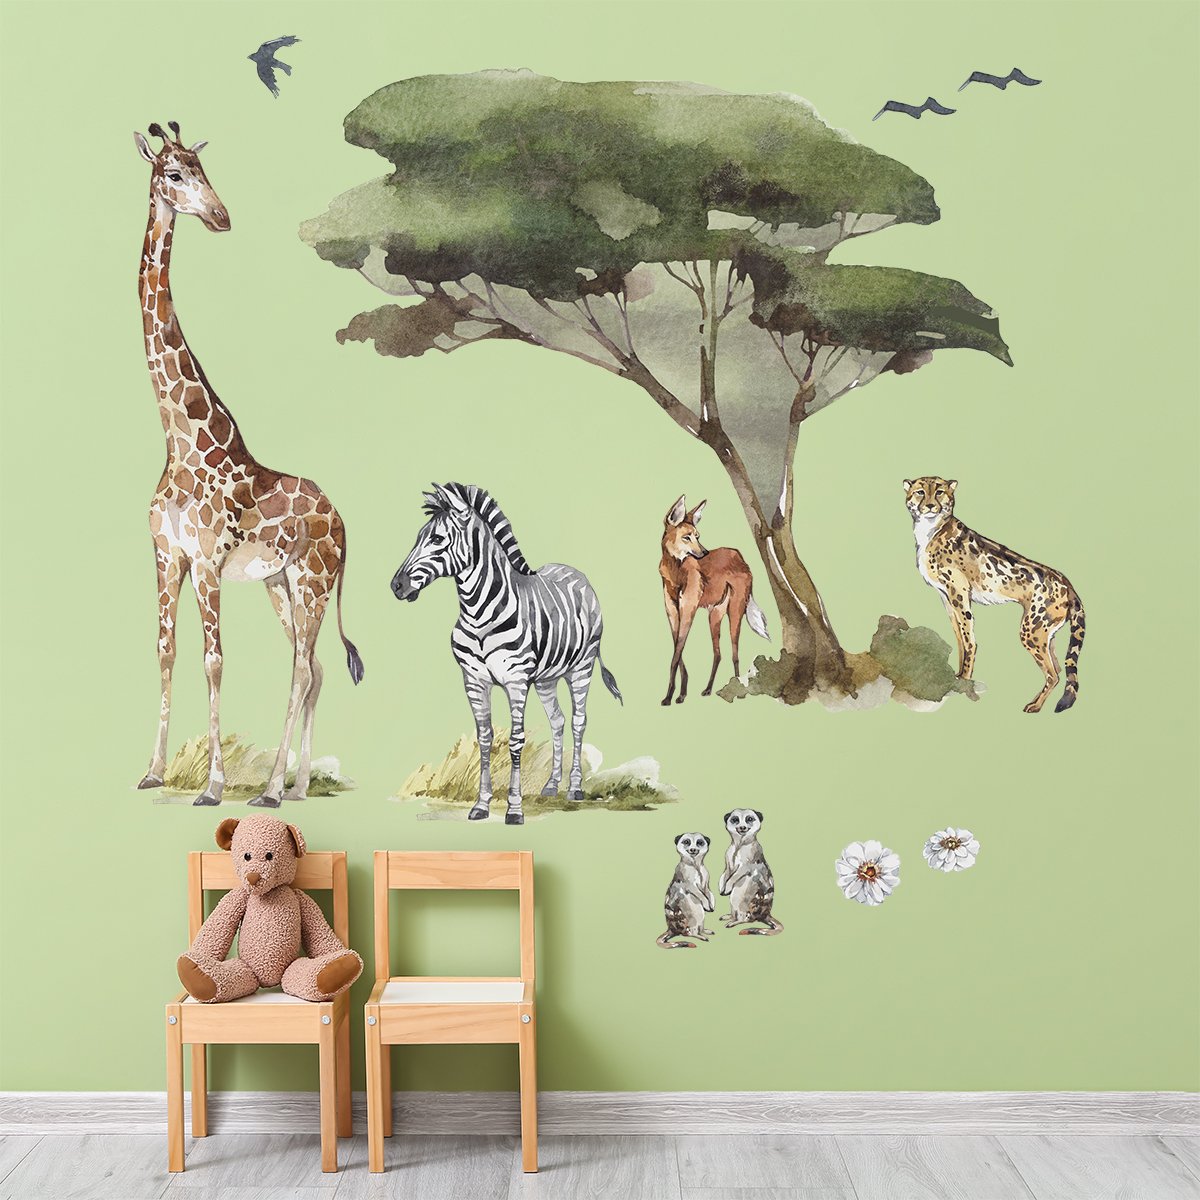 Naklejki na ścianę dla dziewczynki z żyrafą i zwierzętami afrykańskimi naklejone na ścianie nad stolikiem z krzesełkami w pokoju dziecięcym